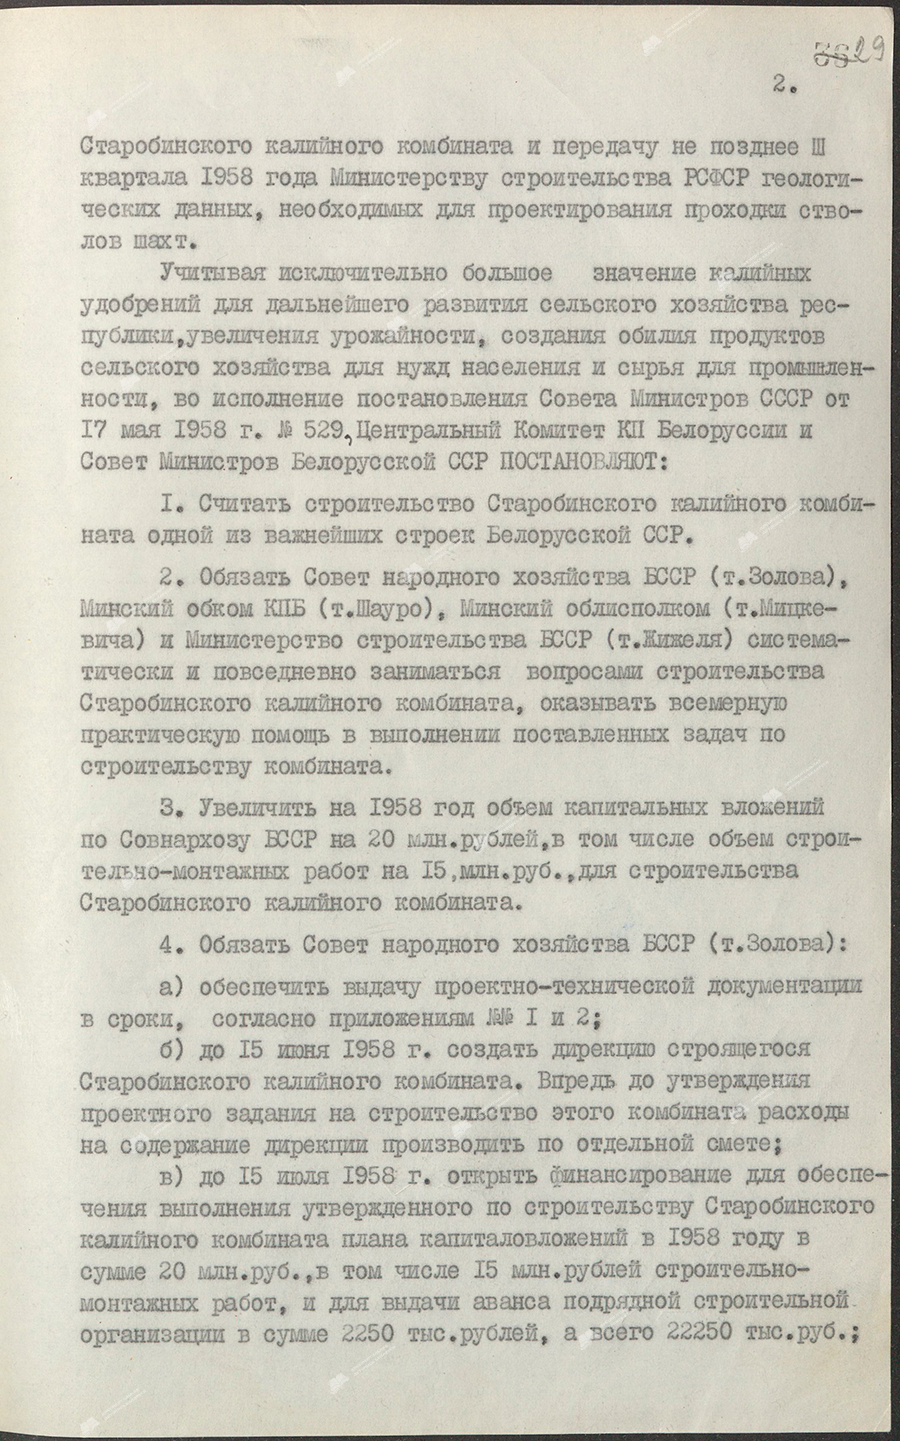 Beschluss Nr. 368 des Zentralkomitees des KP von Belarus und des Ministerrats der BSSR «Über den Bau des Kalikombinats Starobinsky»-стр. 1